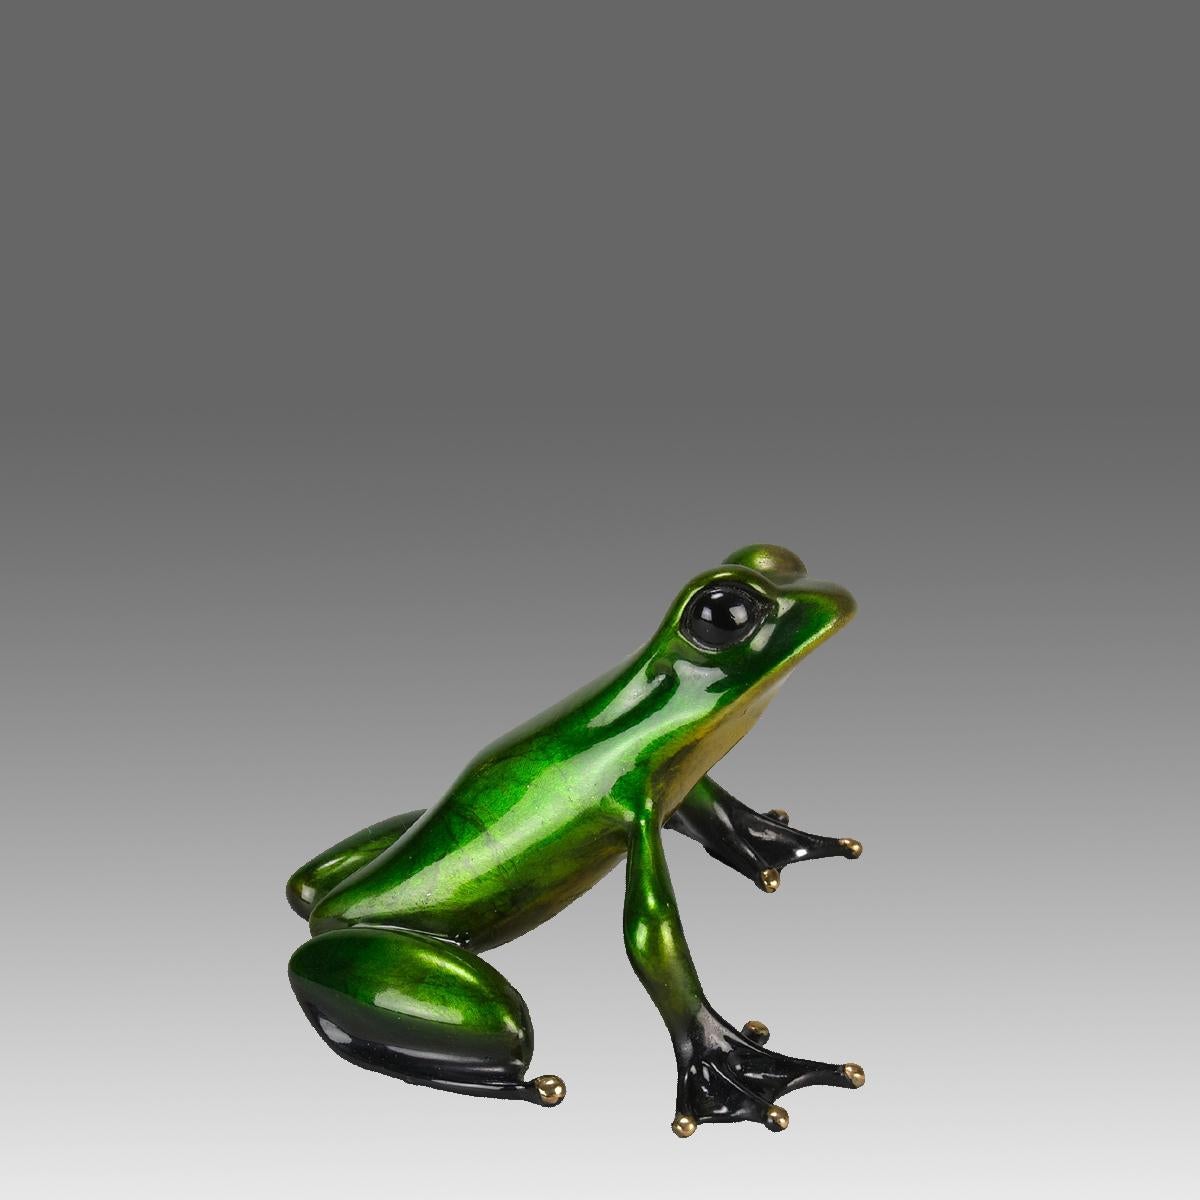 Eine attraktive Bronzestudie in limitierter Auflage eines sitzenden Frosches in Metallic-Grün mit sehr feinen Emailfarben und ausgezeichneter fühlbarer Oberfläche, signiert Tim, gestempelt 'Frogman' und nummeriert 330/1000 und in Farbe limitiert auf